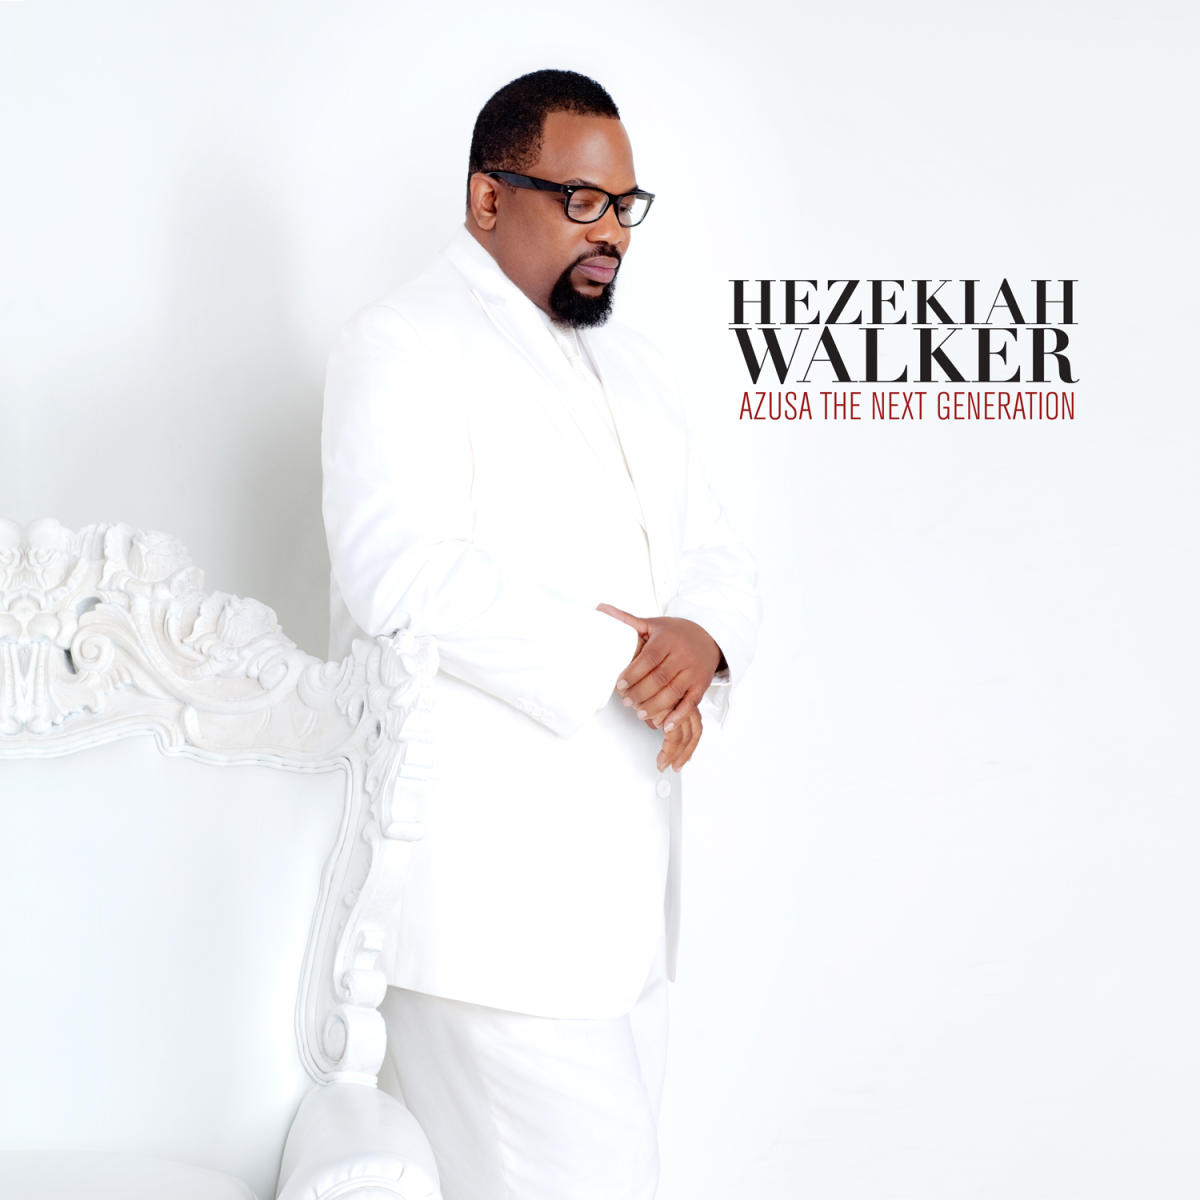 Review Hezekiah Walker hits mark with new album